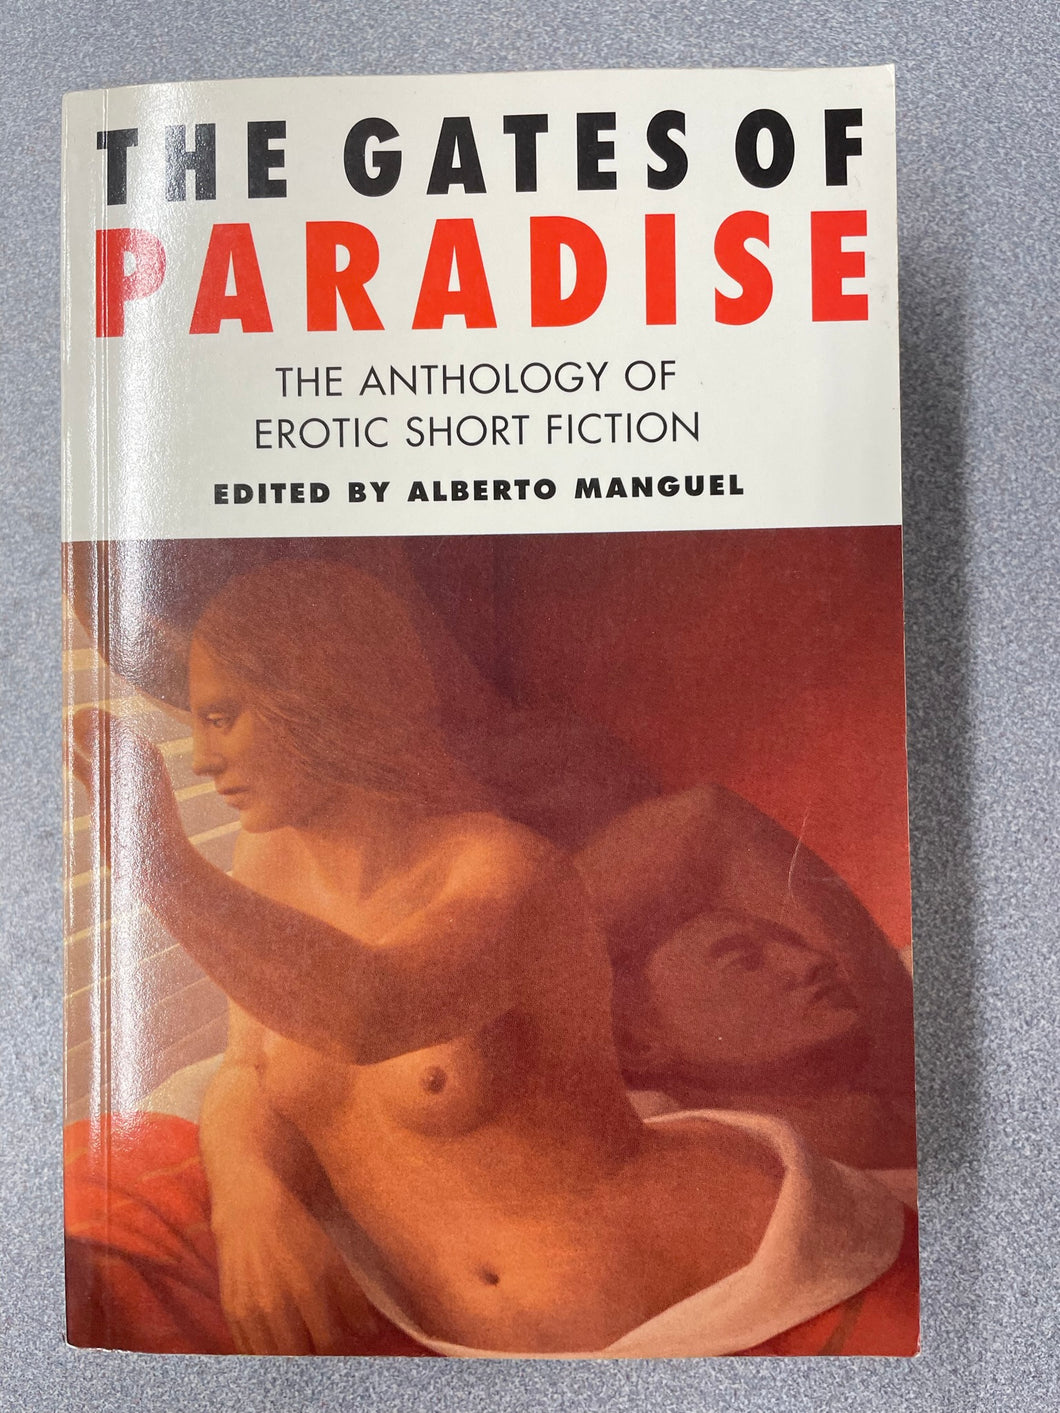 The Gates of Paradise: The Anthology of Erotic Short Fiction, Manguel, Alberto, ed.,[1993] ER 7/23